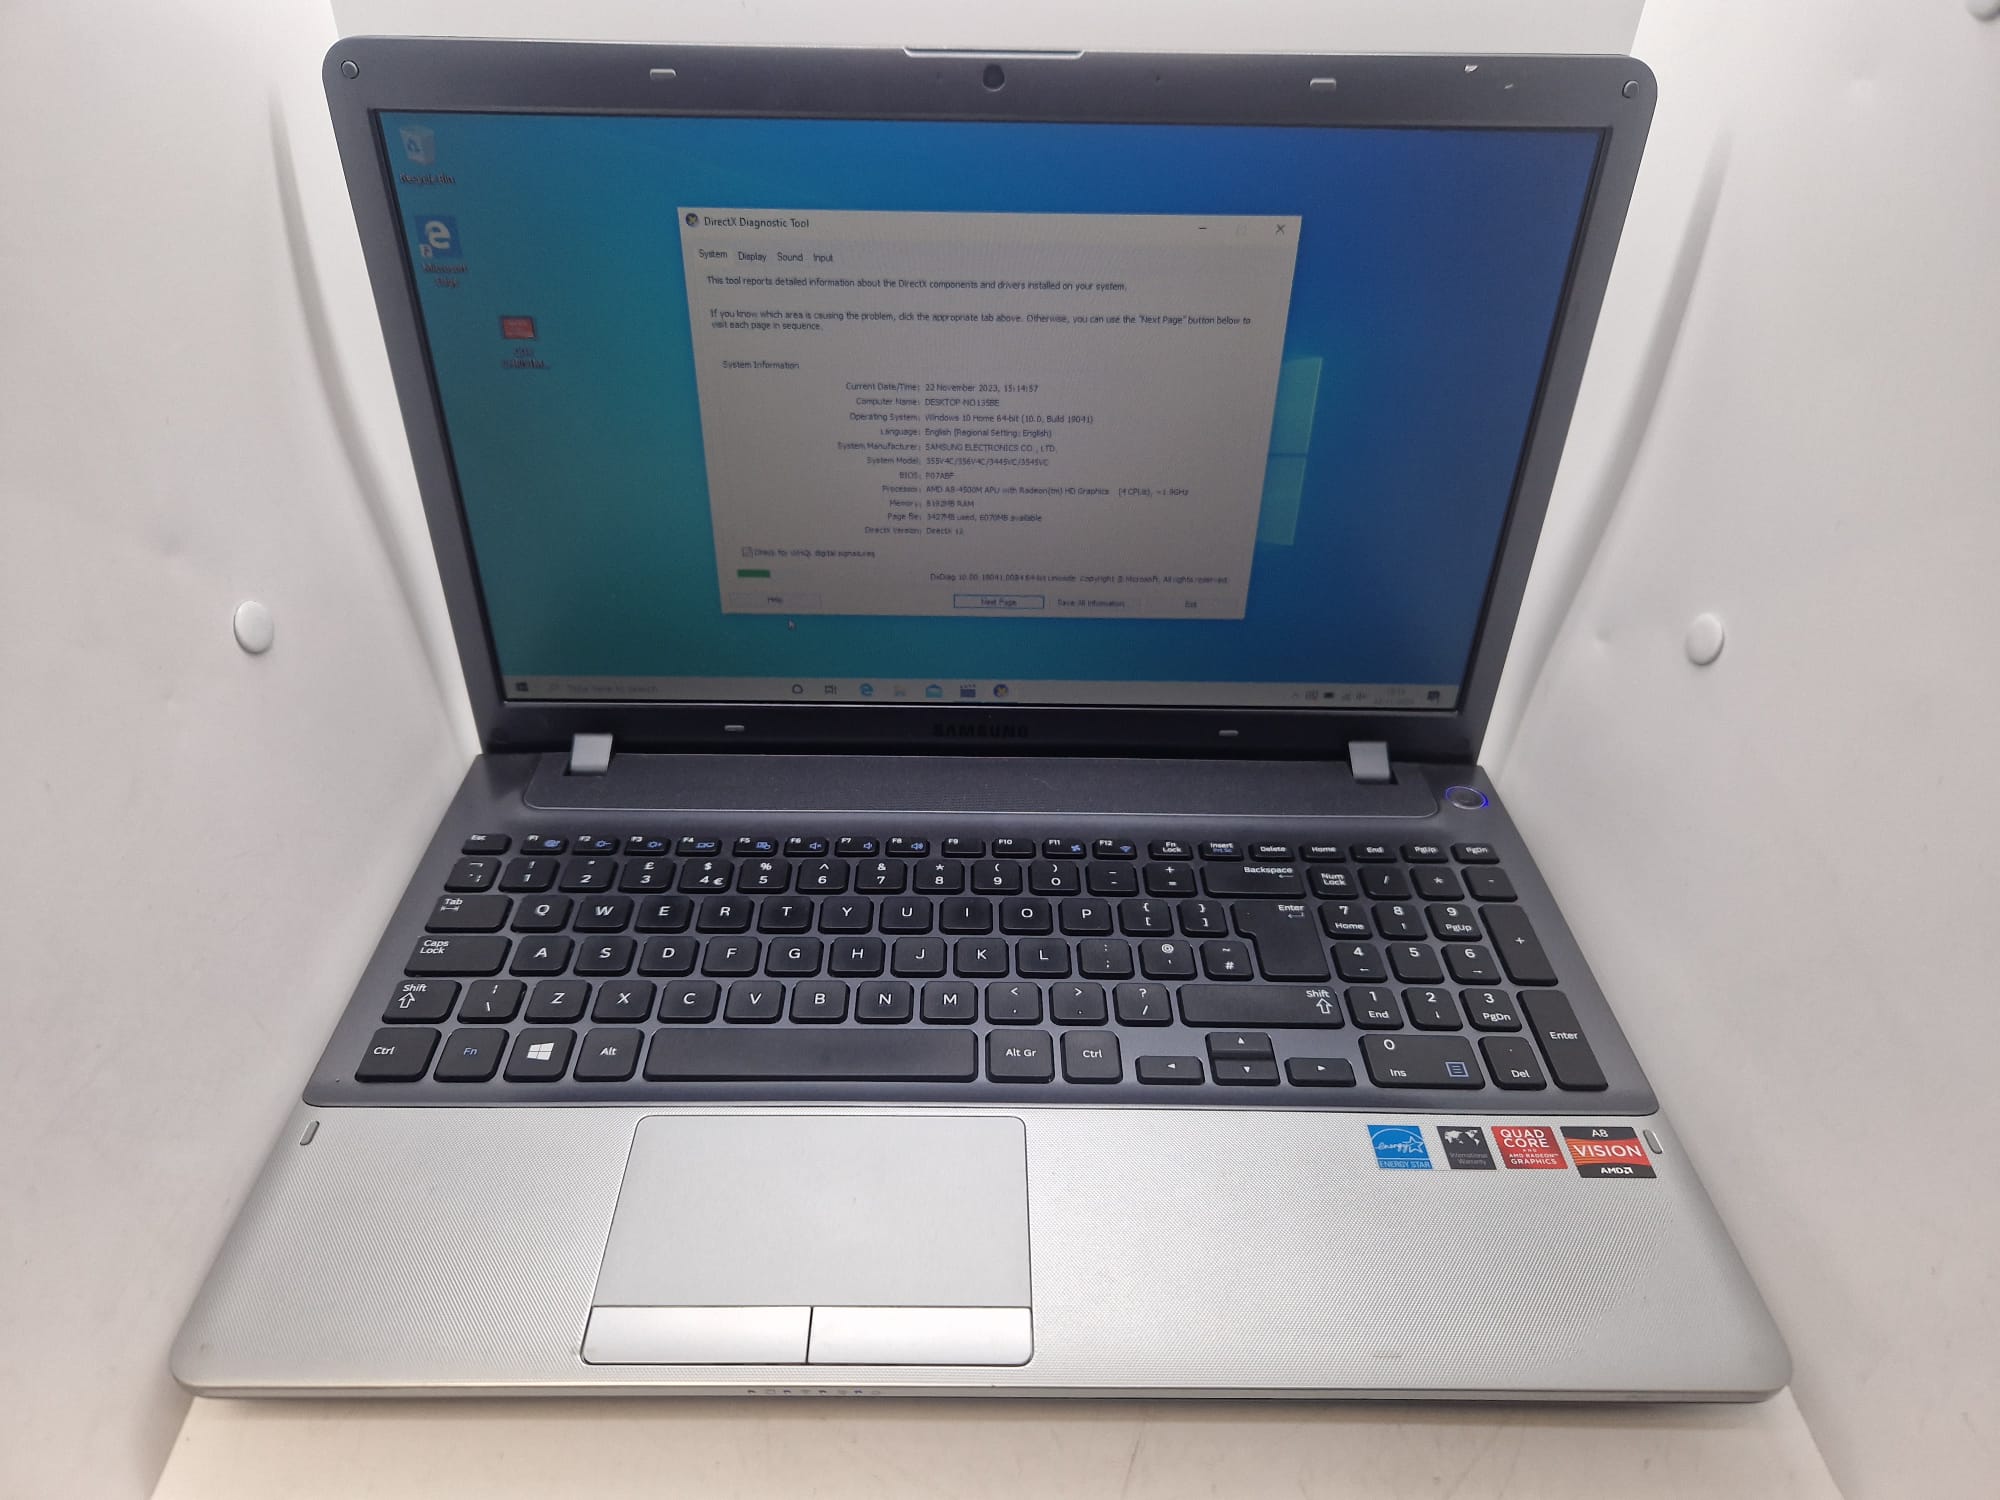 Samsung NP355V5C 15.6 inch Laptop (AMD A8 4500M 1.9GHz 8GB RAM, 1TB)